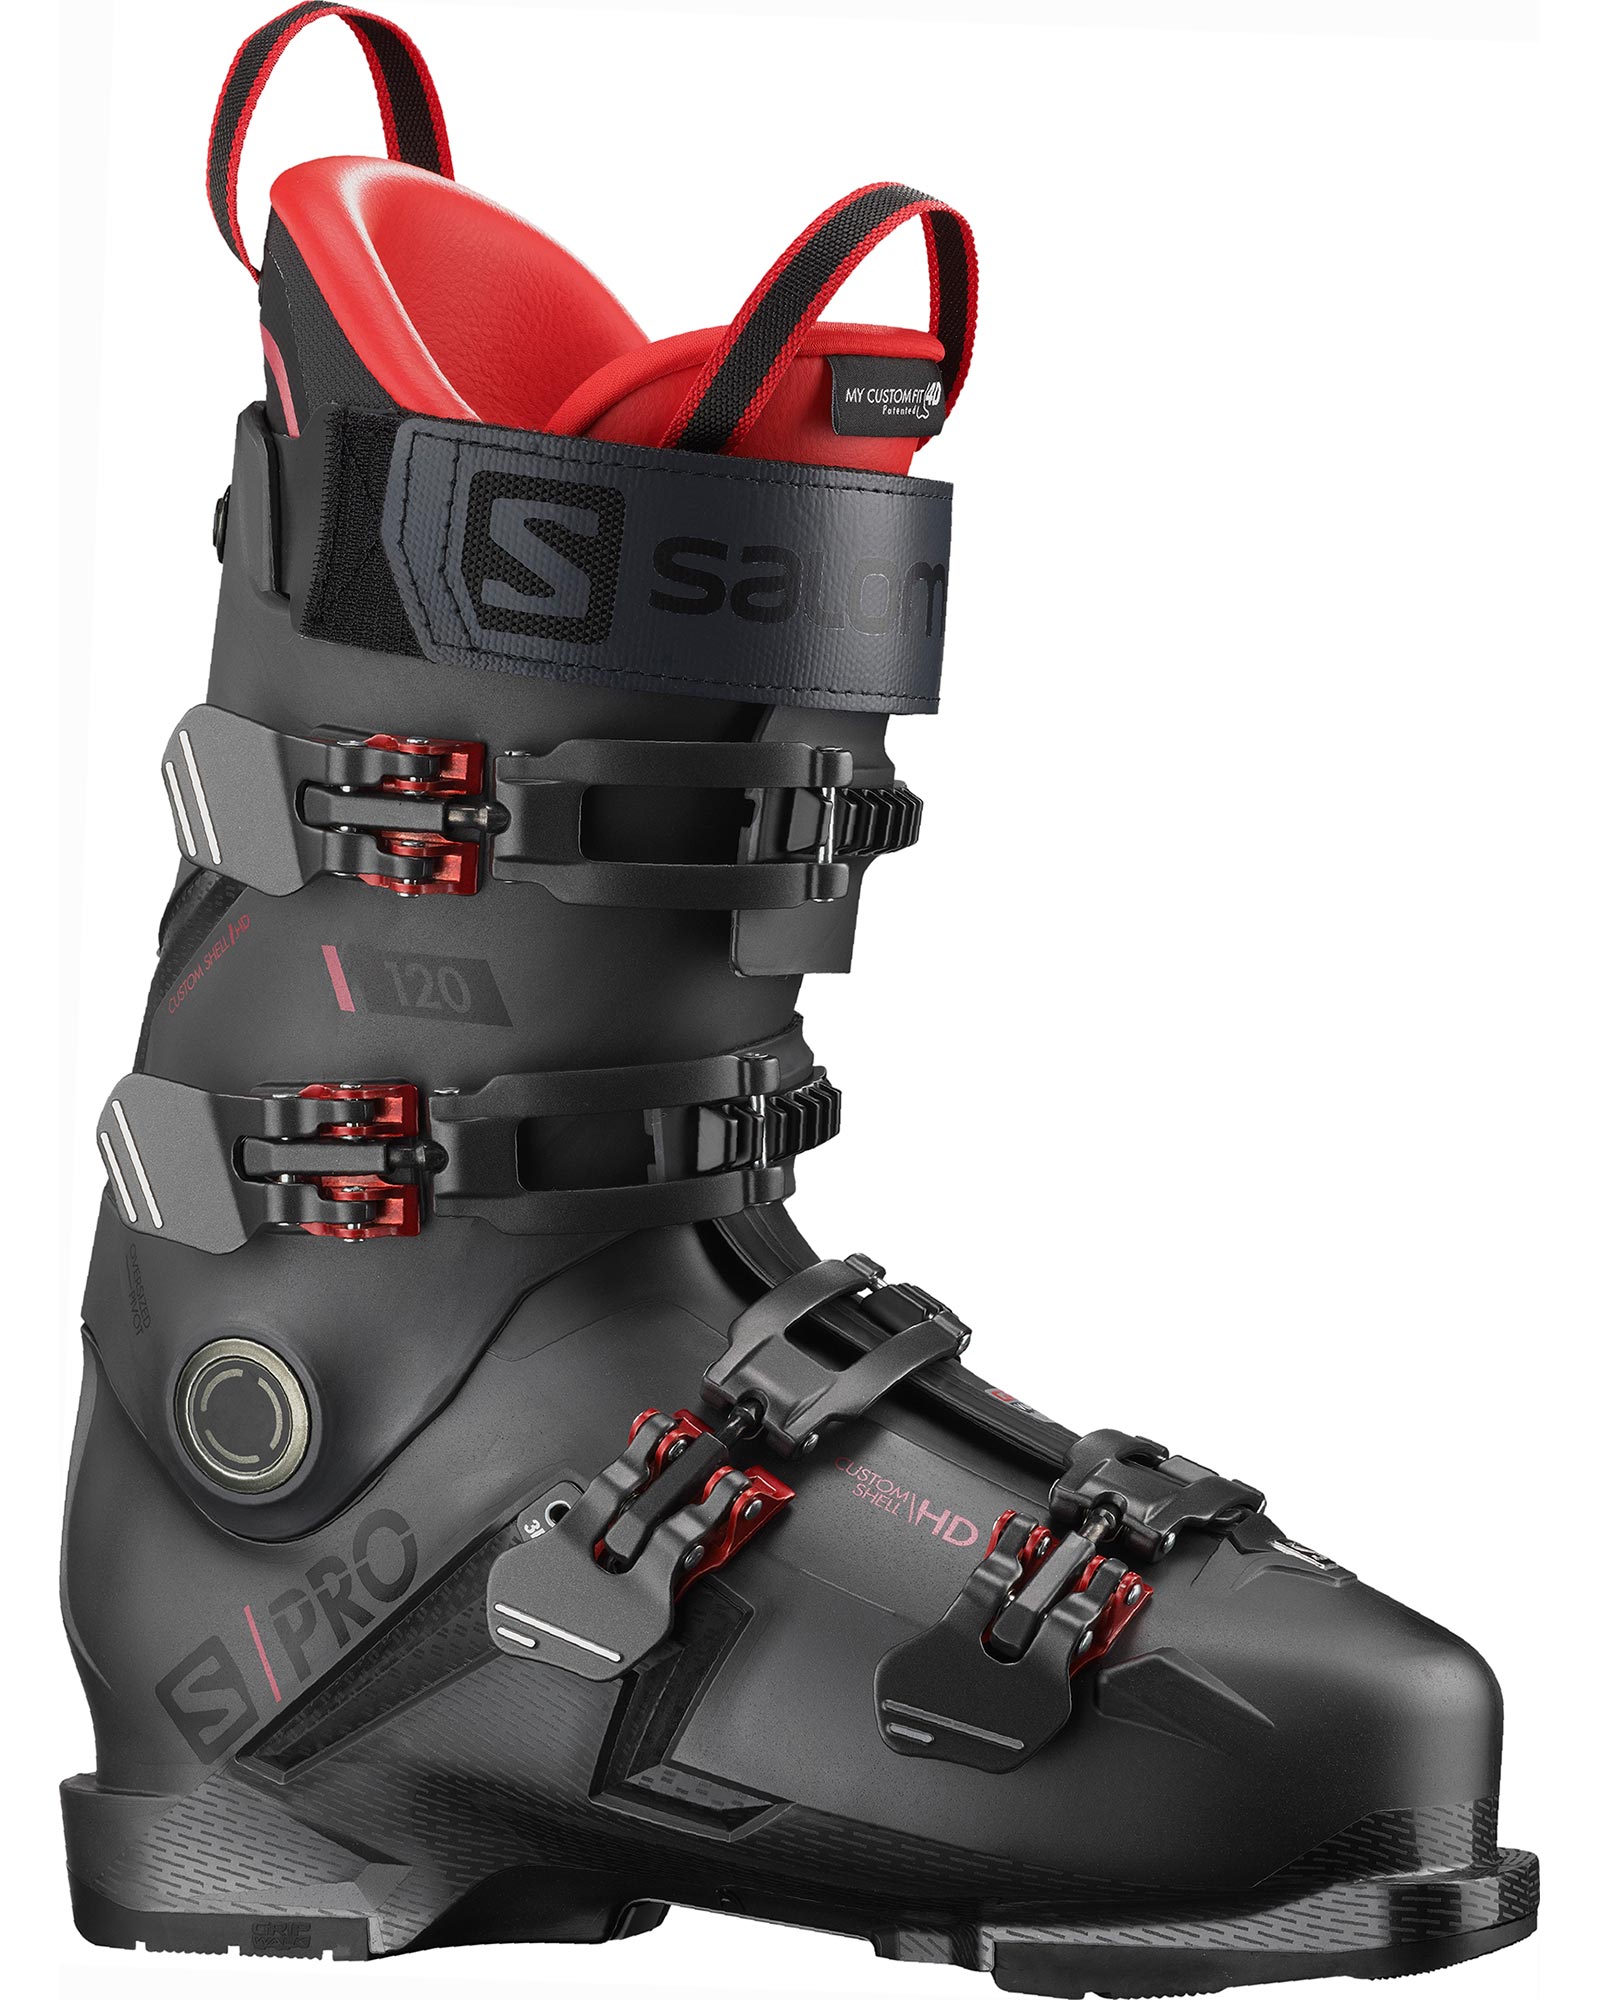 Salomon S/PRO 120 GW Men’s Ski Boots 2023 - Belluga/Red/Black MP 28.5